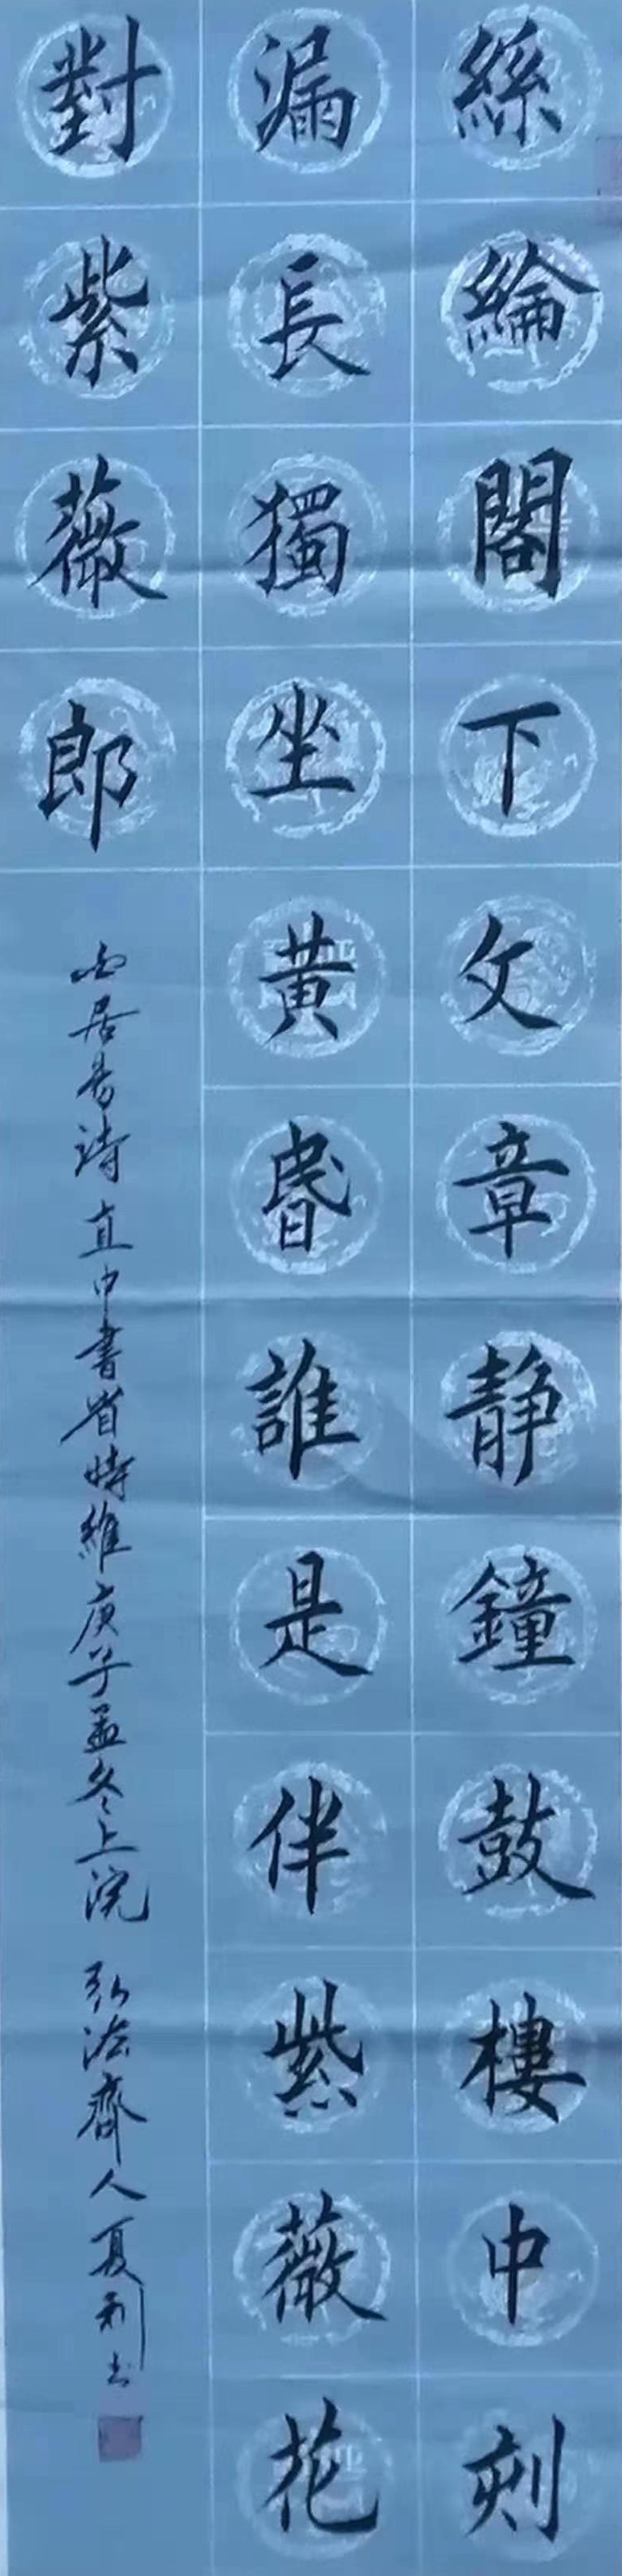 中国楹联学会中宣盛世文化艺术交流中心书画风采展示——法夏利